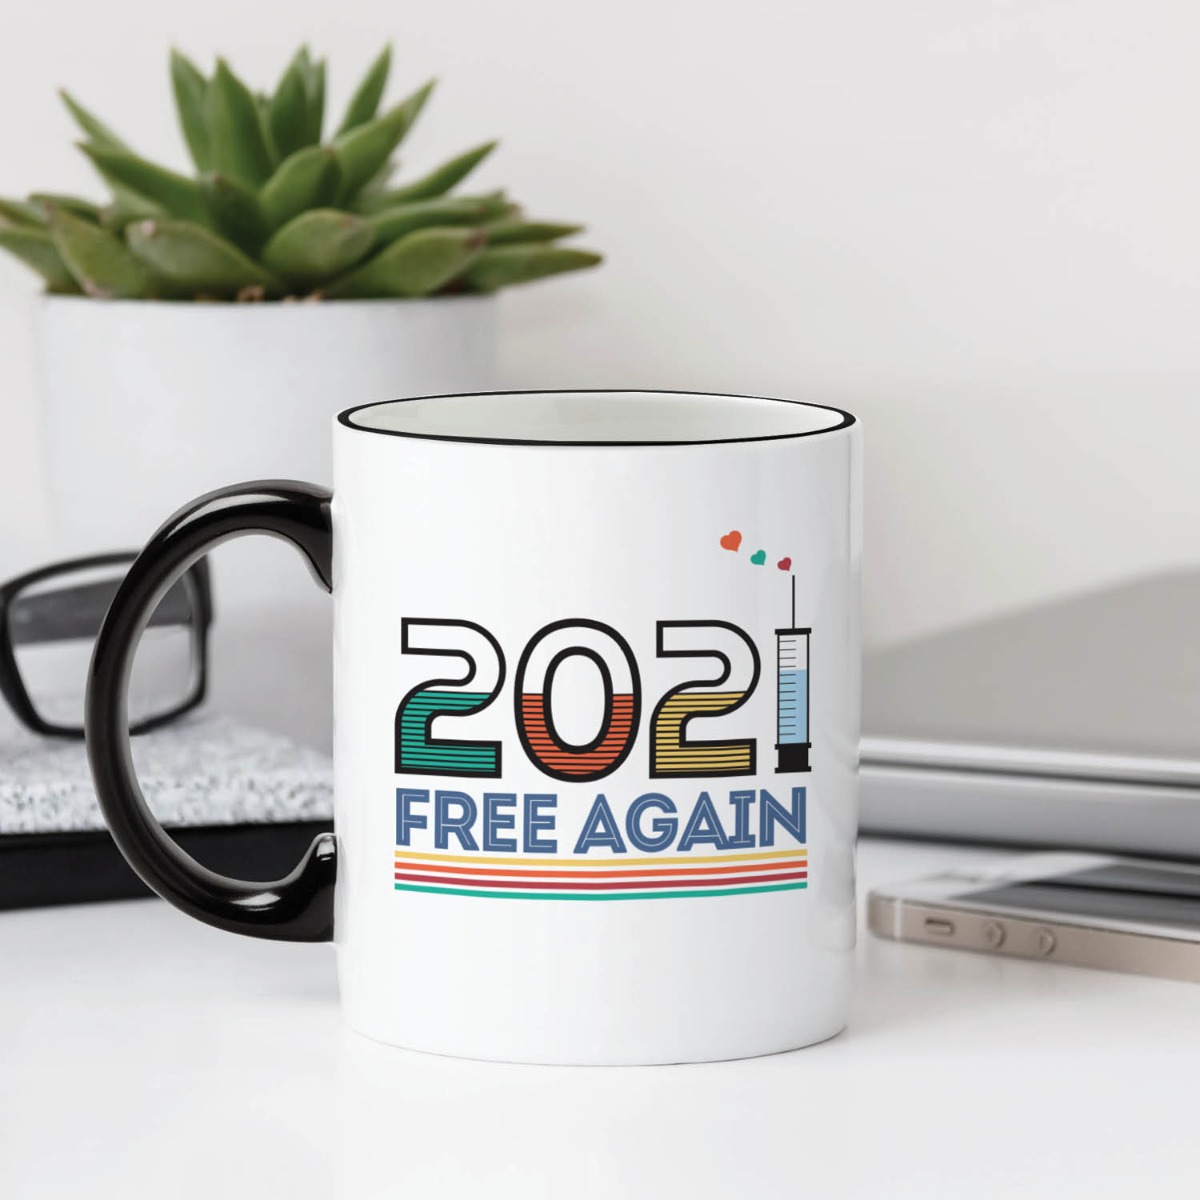 2021 Free Again Black Handle Coffee Mug - 11 oz.